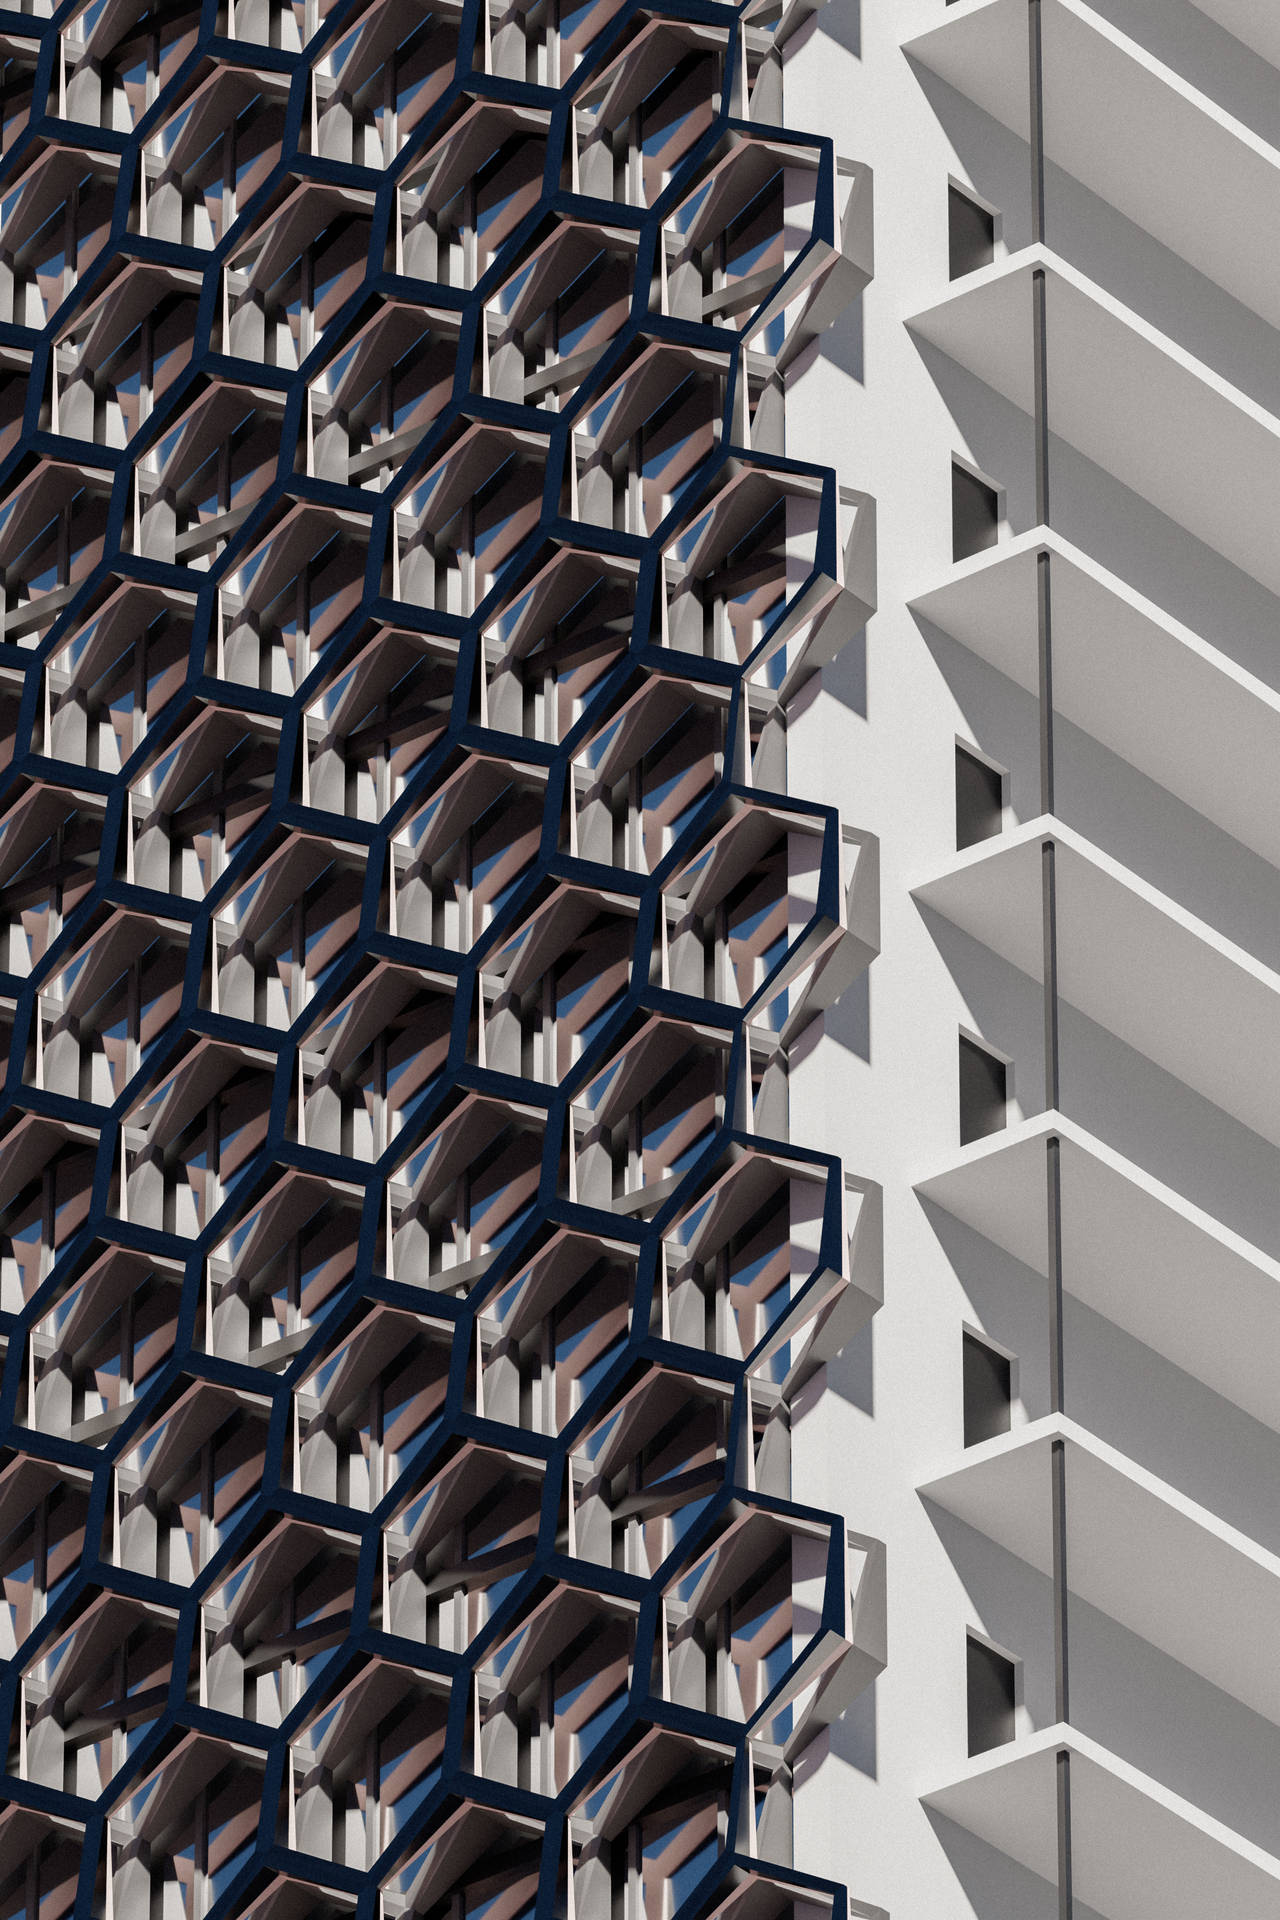 Hexagon Building Facade Mobile 3d Background